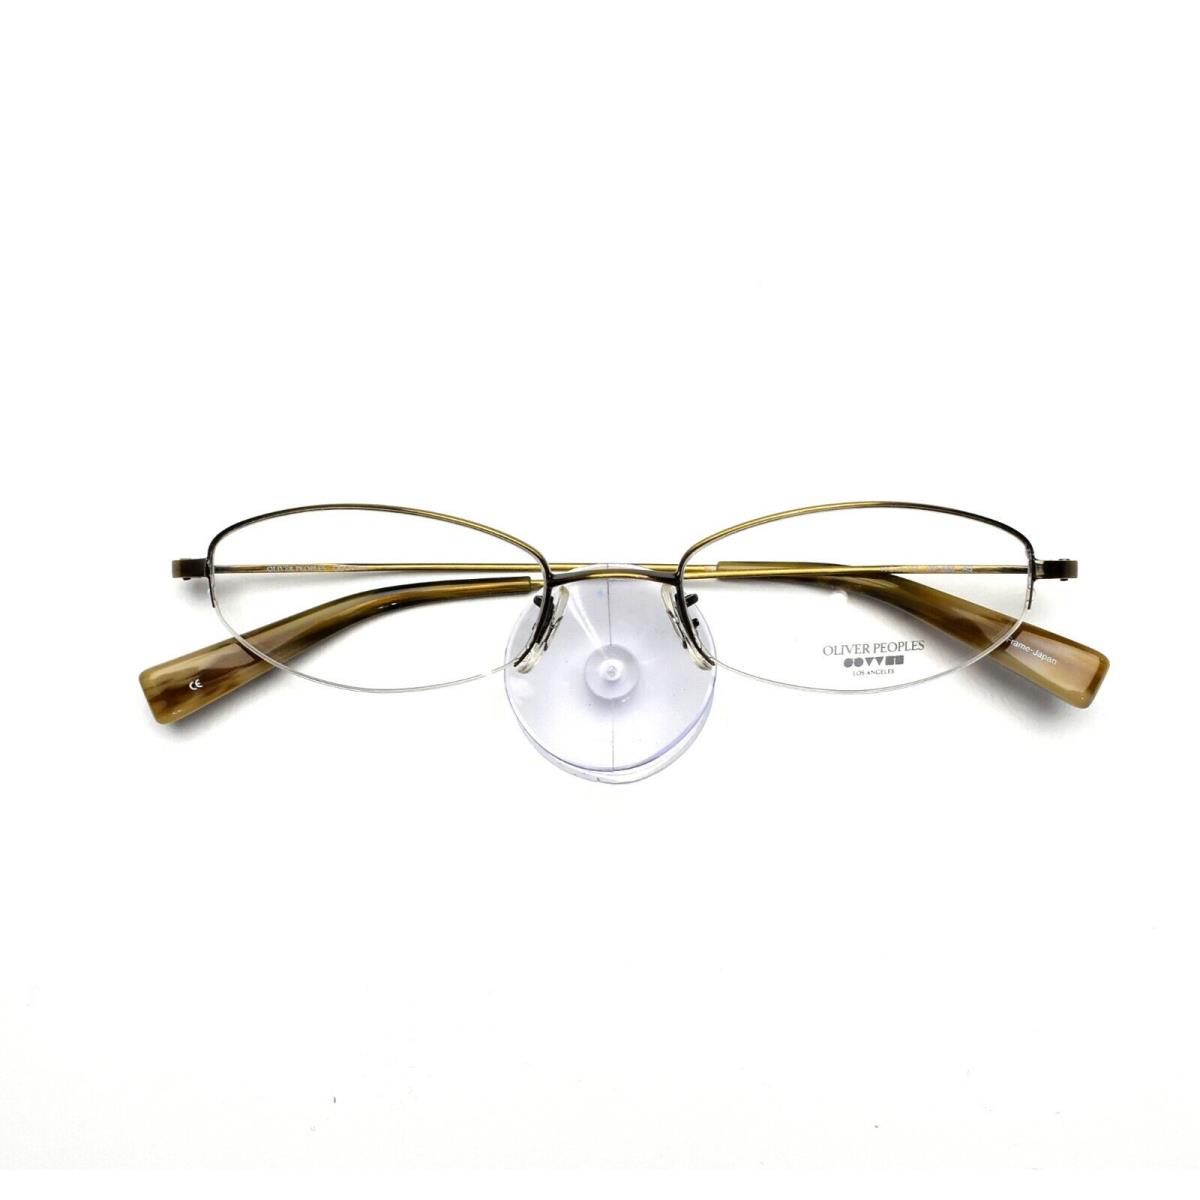 Oliver Peoples Eyeglasses 668 Titanium 49-18-135